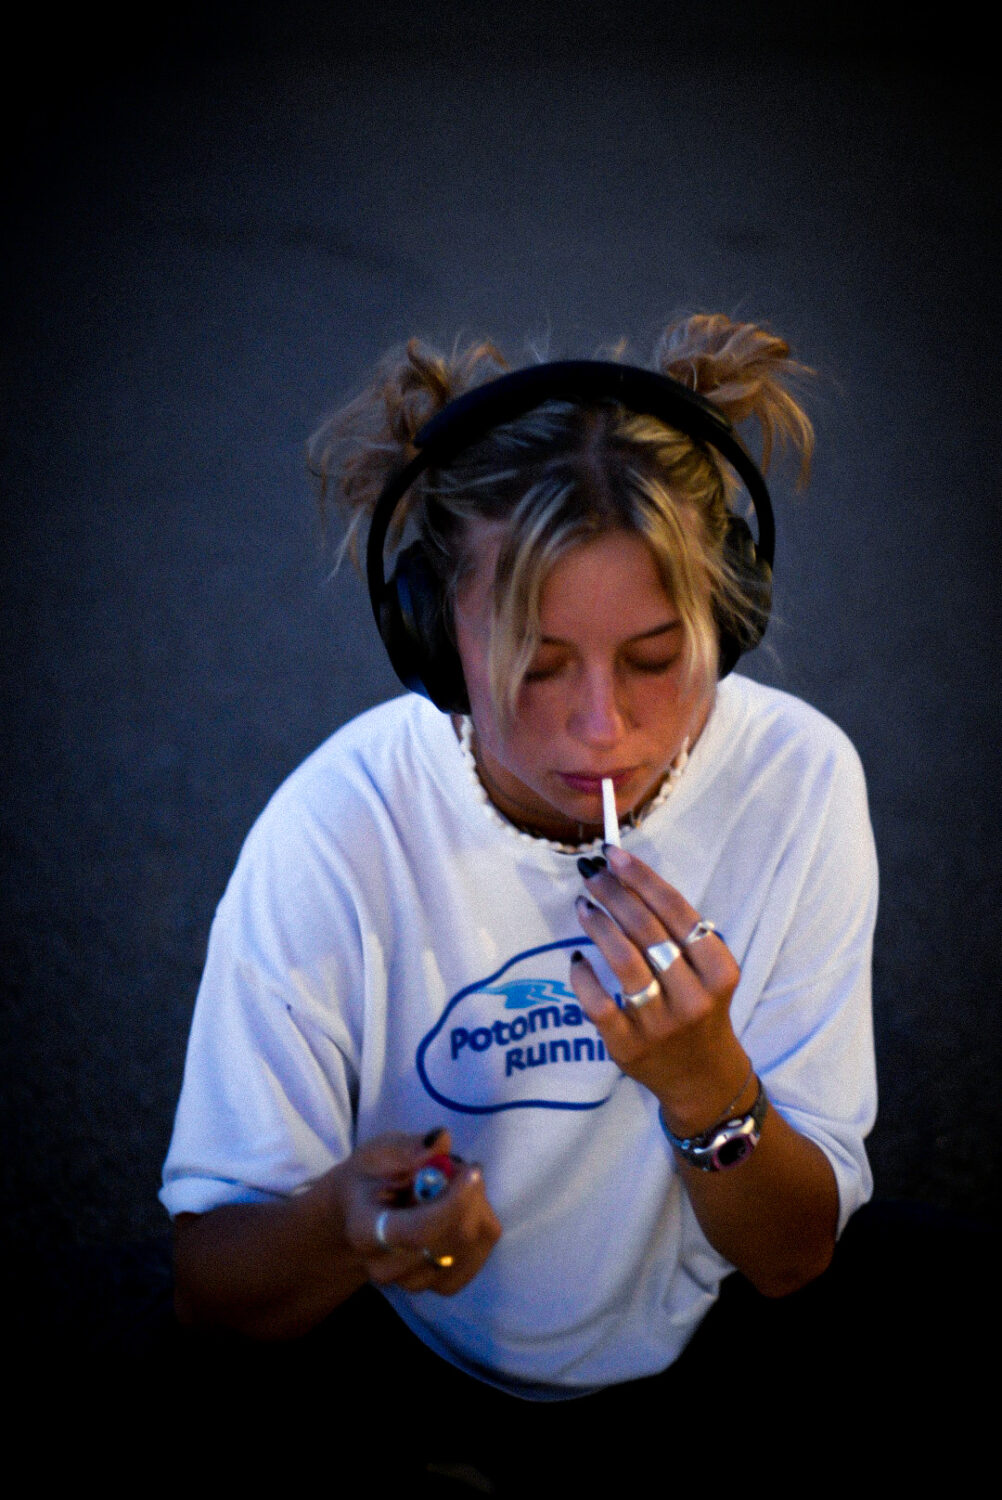 Das Foto zeigt die Musikerin Mara. Sie trägt zwei blonde Zöpfe, ein weißes Shirt, viele Ringe an den Fingern und Kopfhörer. Sie zündet sich gerade eine Zigarette an, ihr blick ist auf ihre Hand mit einem feuerzeug gerichtet.